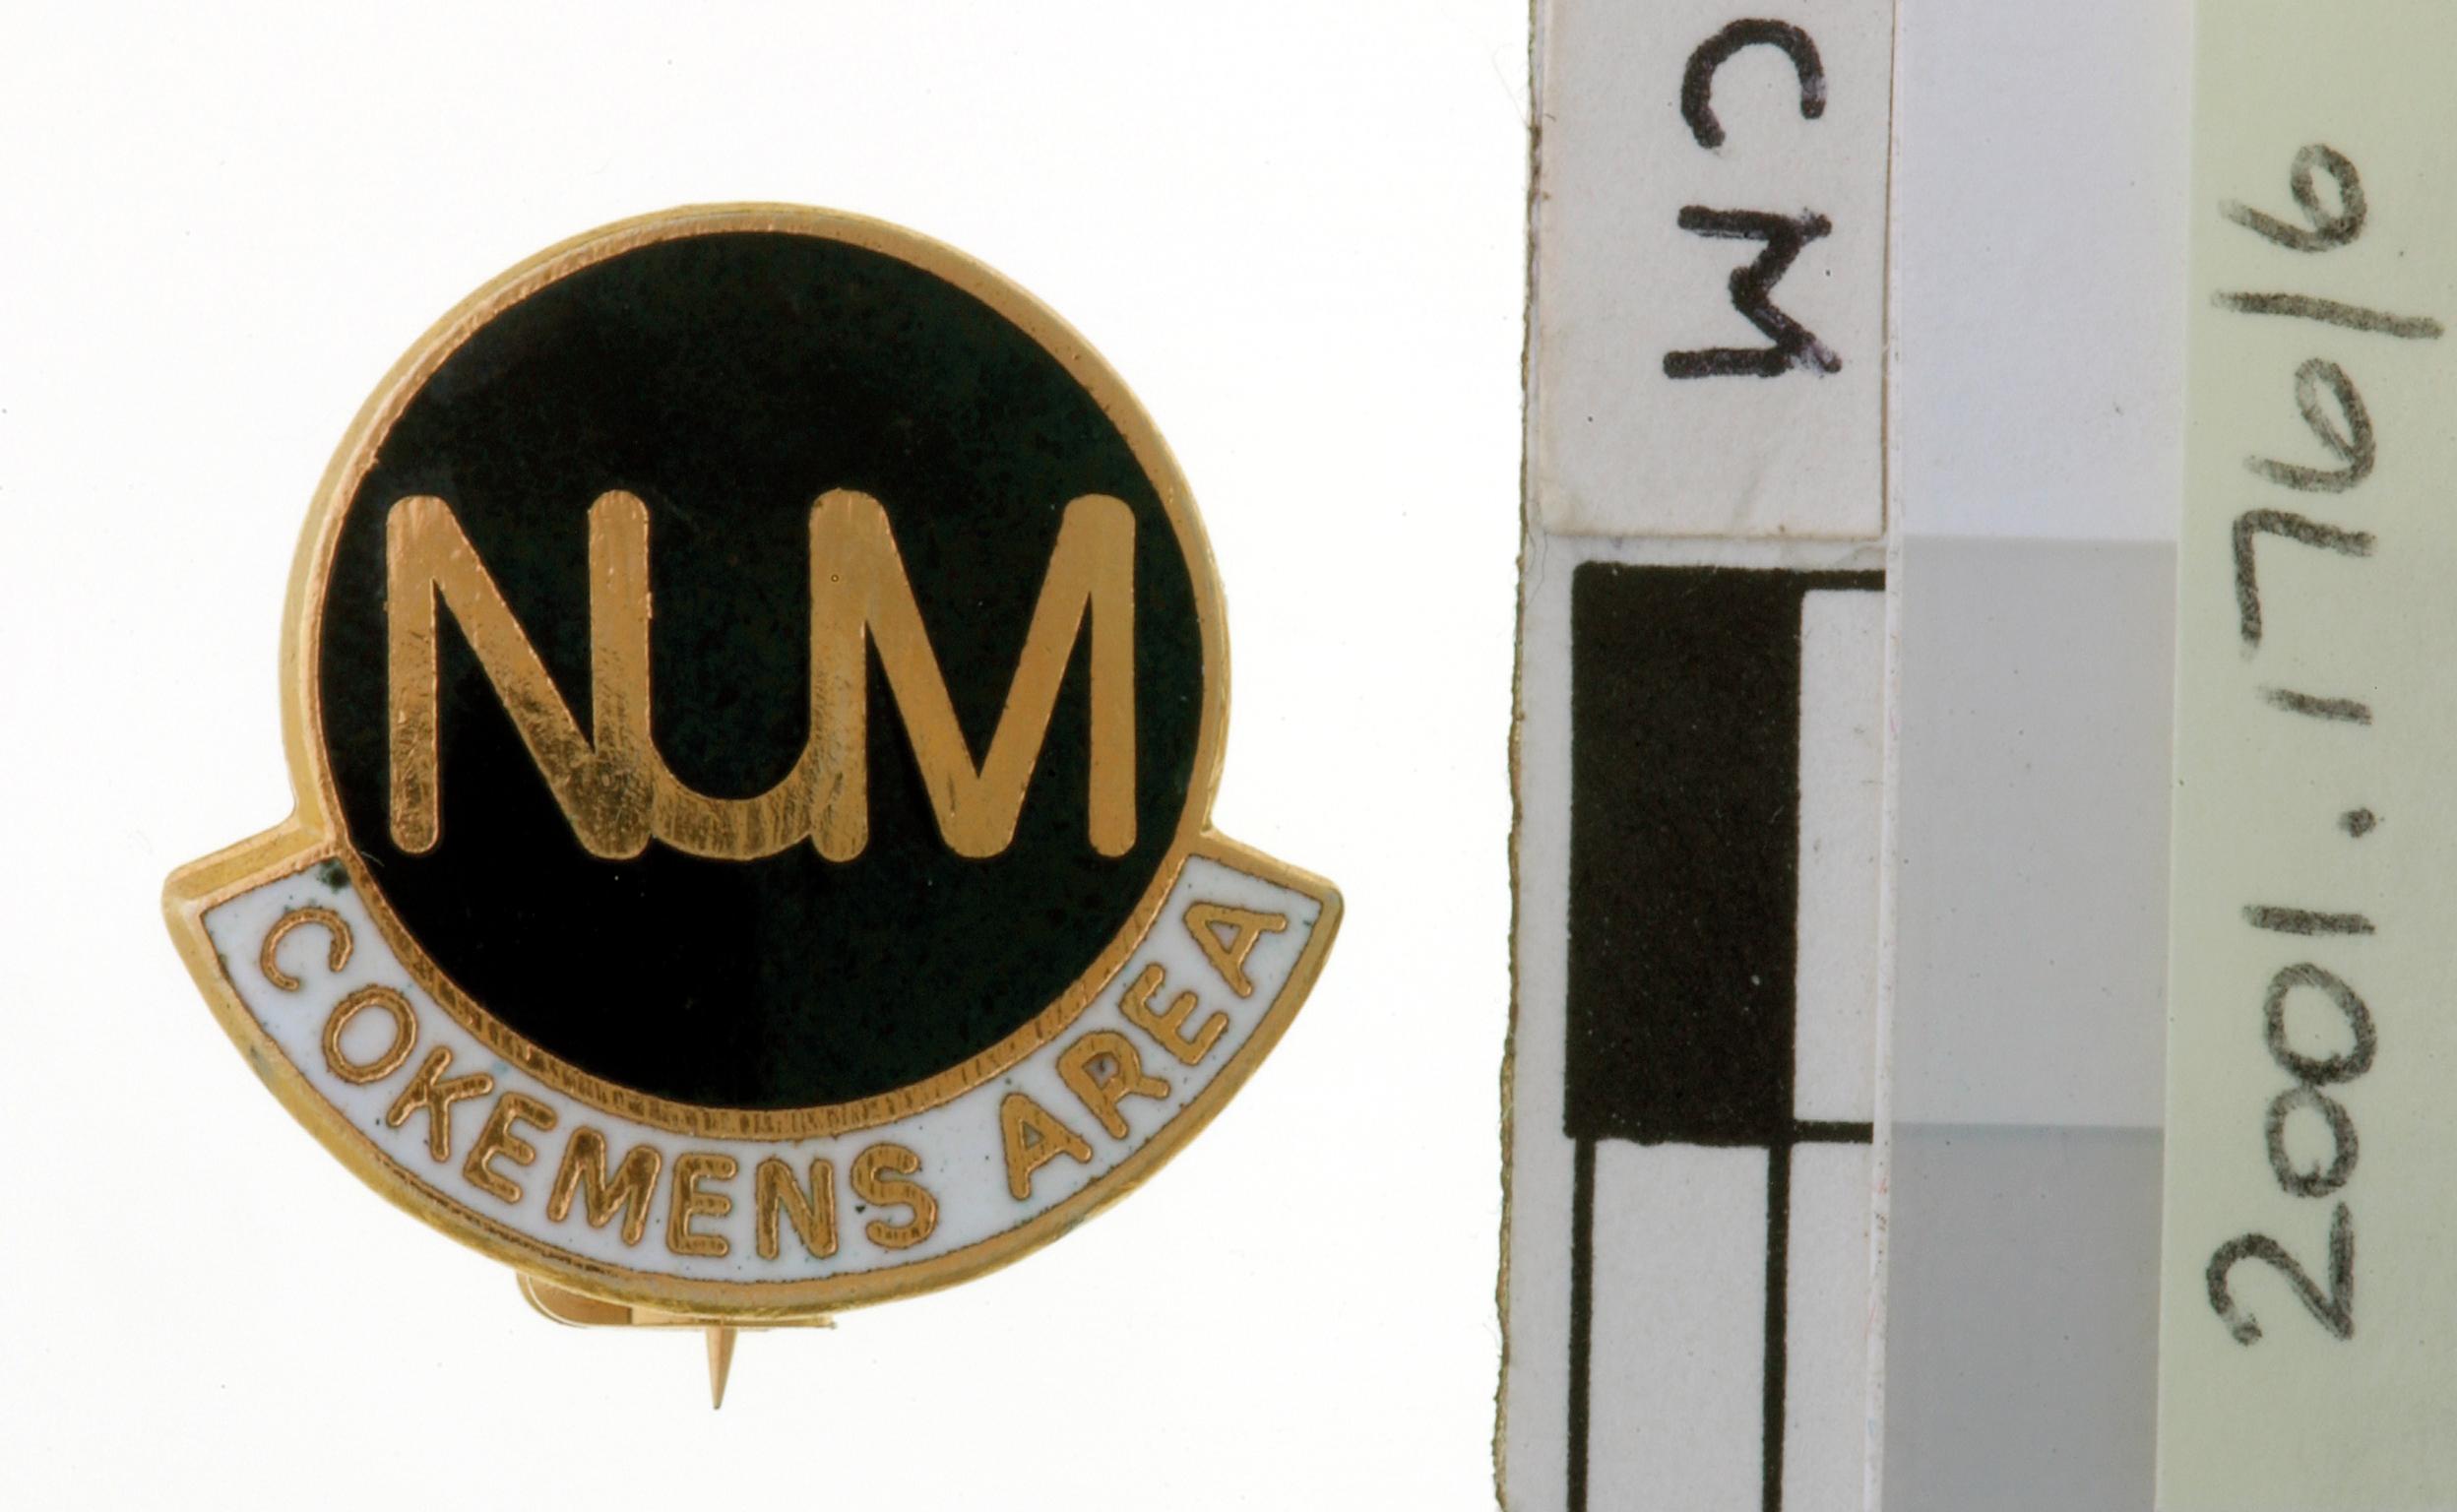 N.U.M. Cokeman's Area, badge